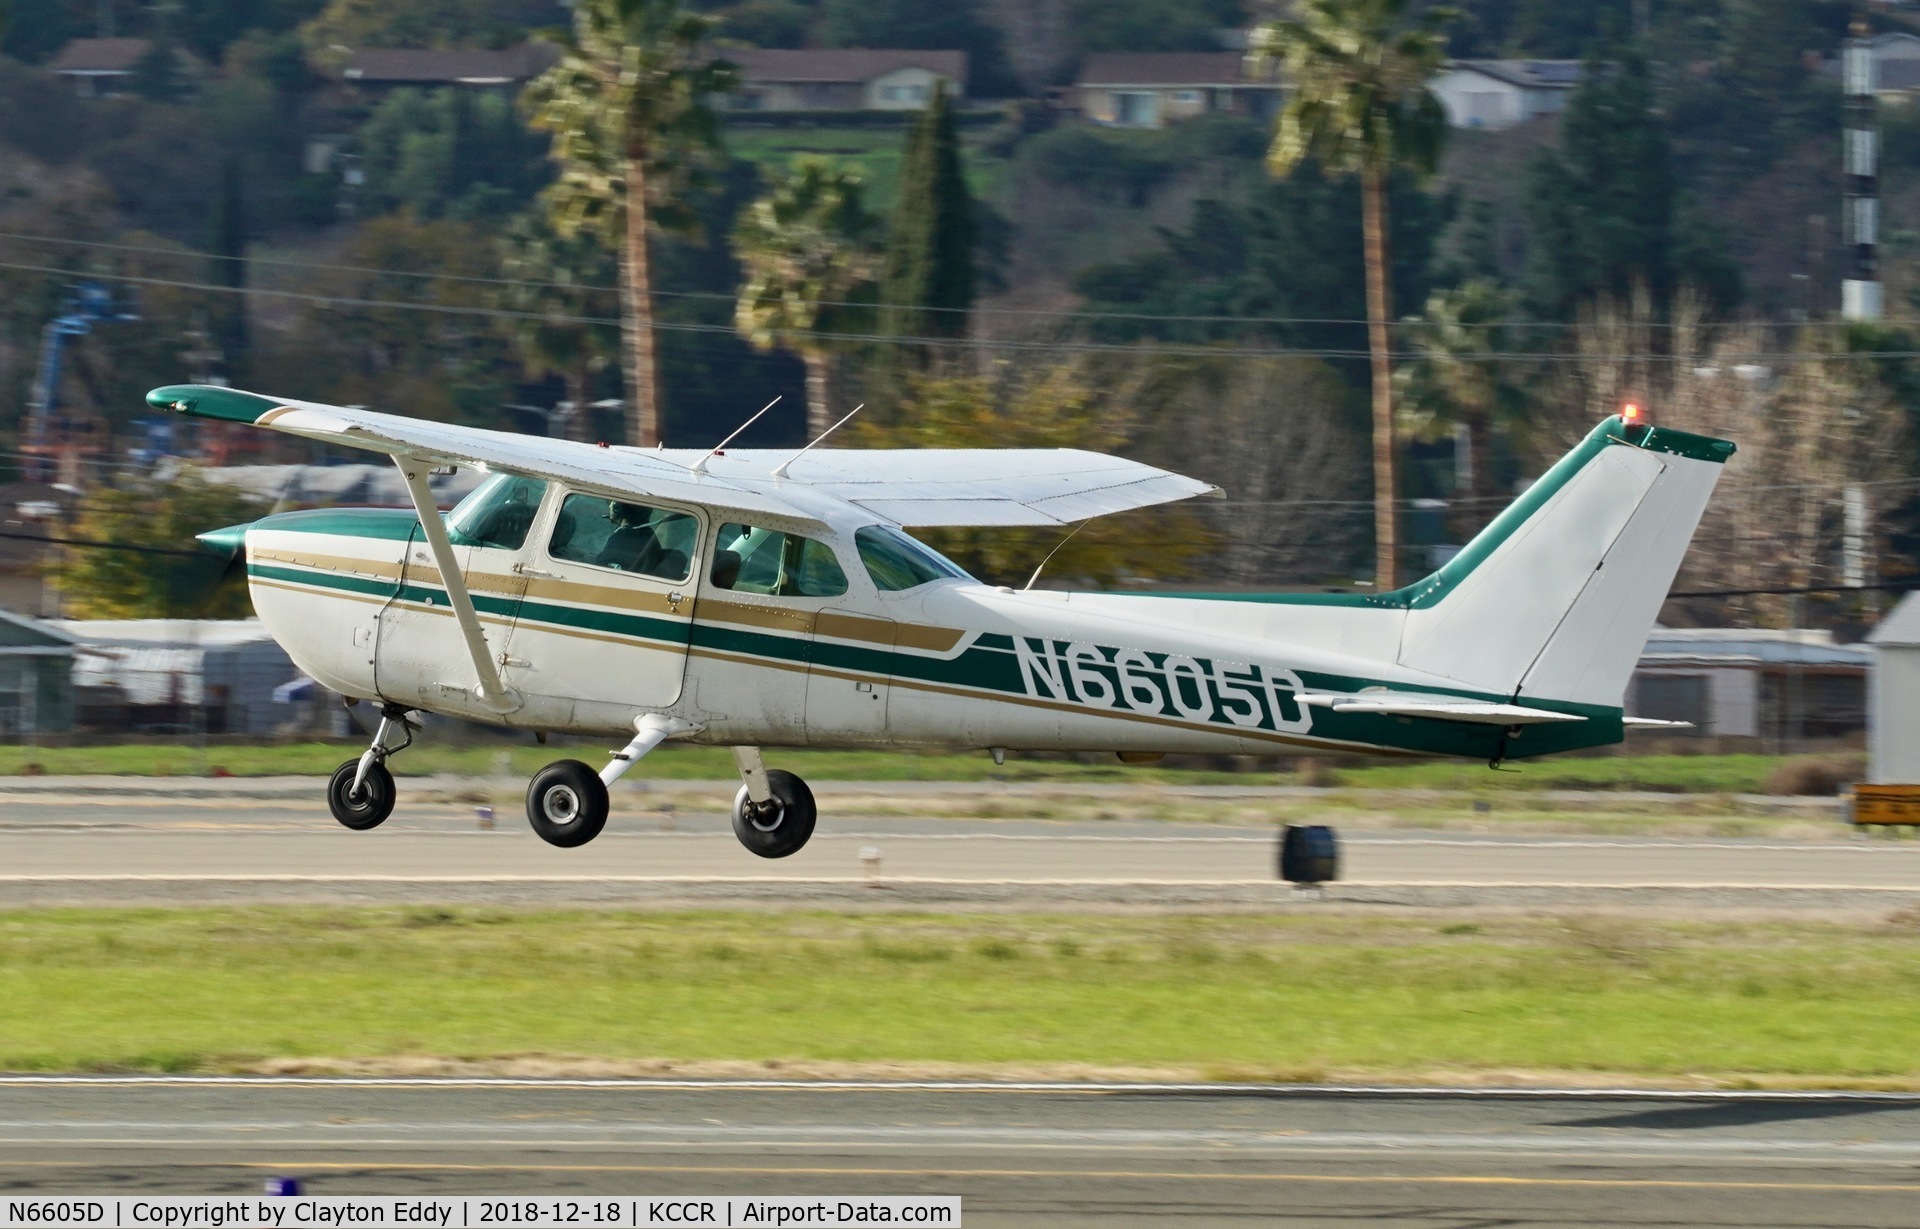 N6605D, 1979 Cessna 172N C/N 17272892, Buchanan Field Concord California 2018.